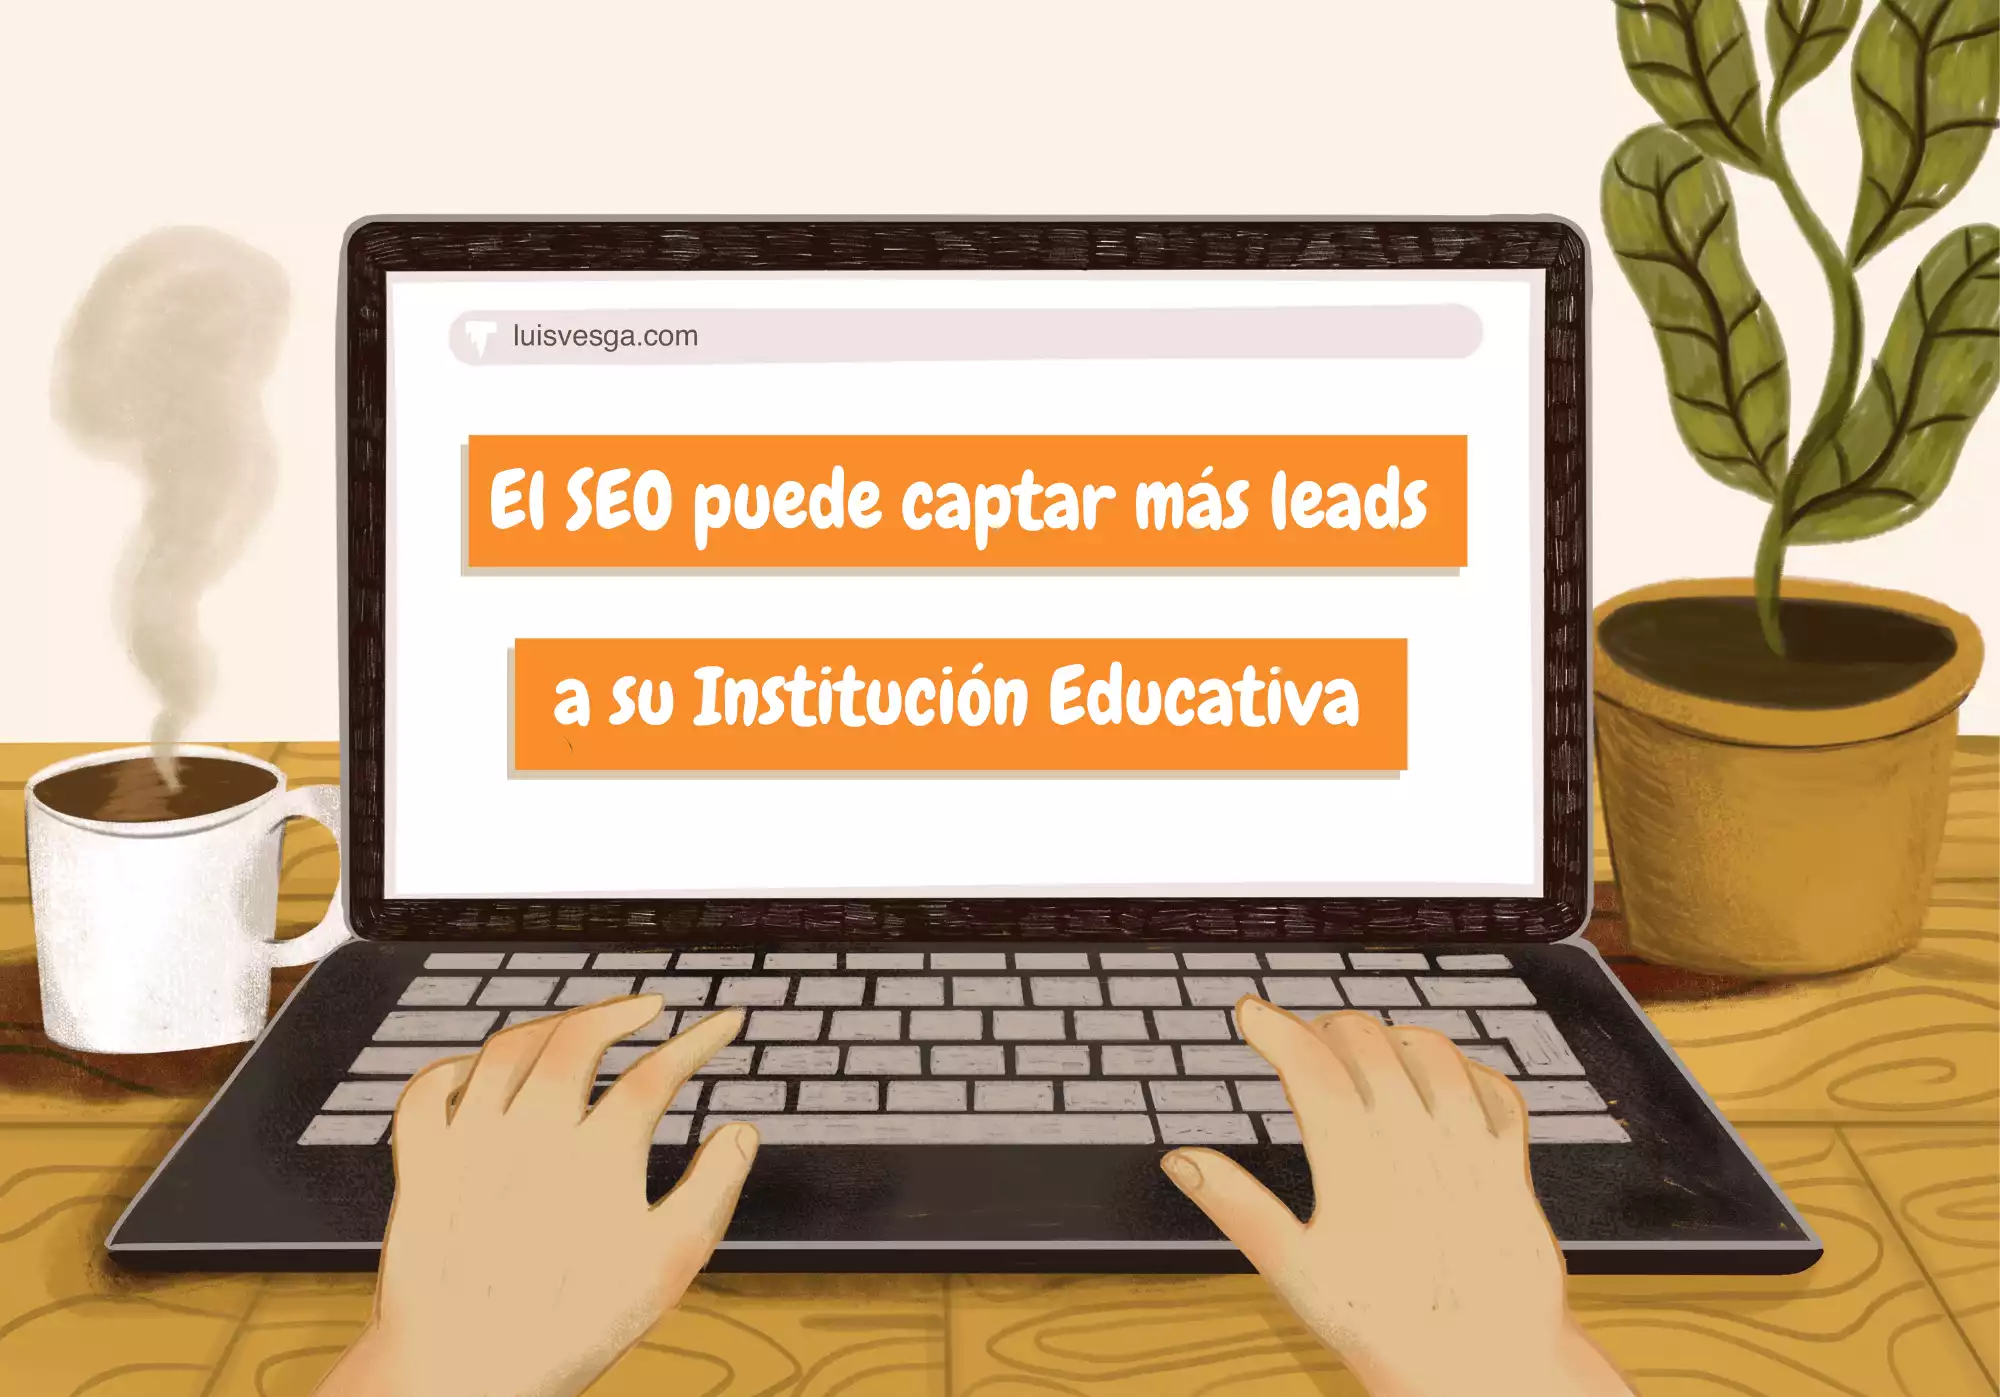 El SEO puede captar más leads a su Institución Educativa